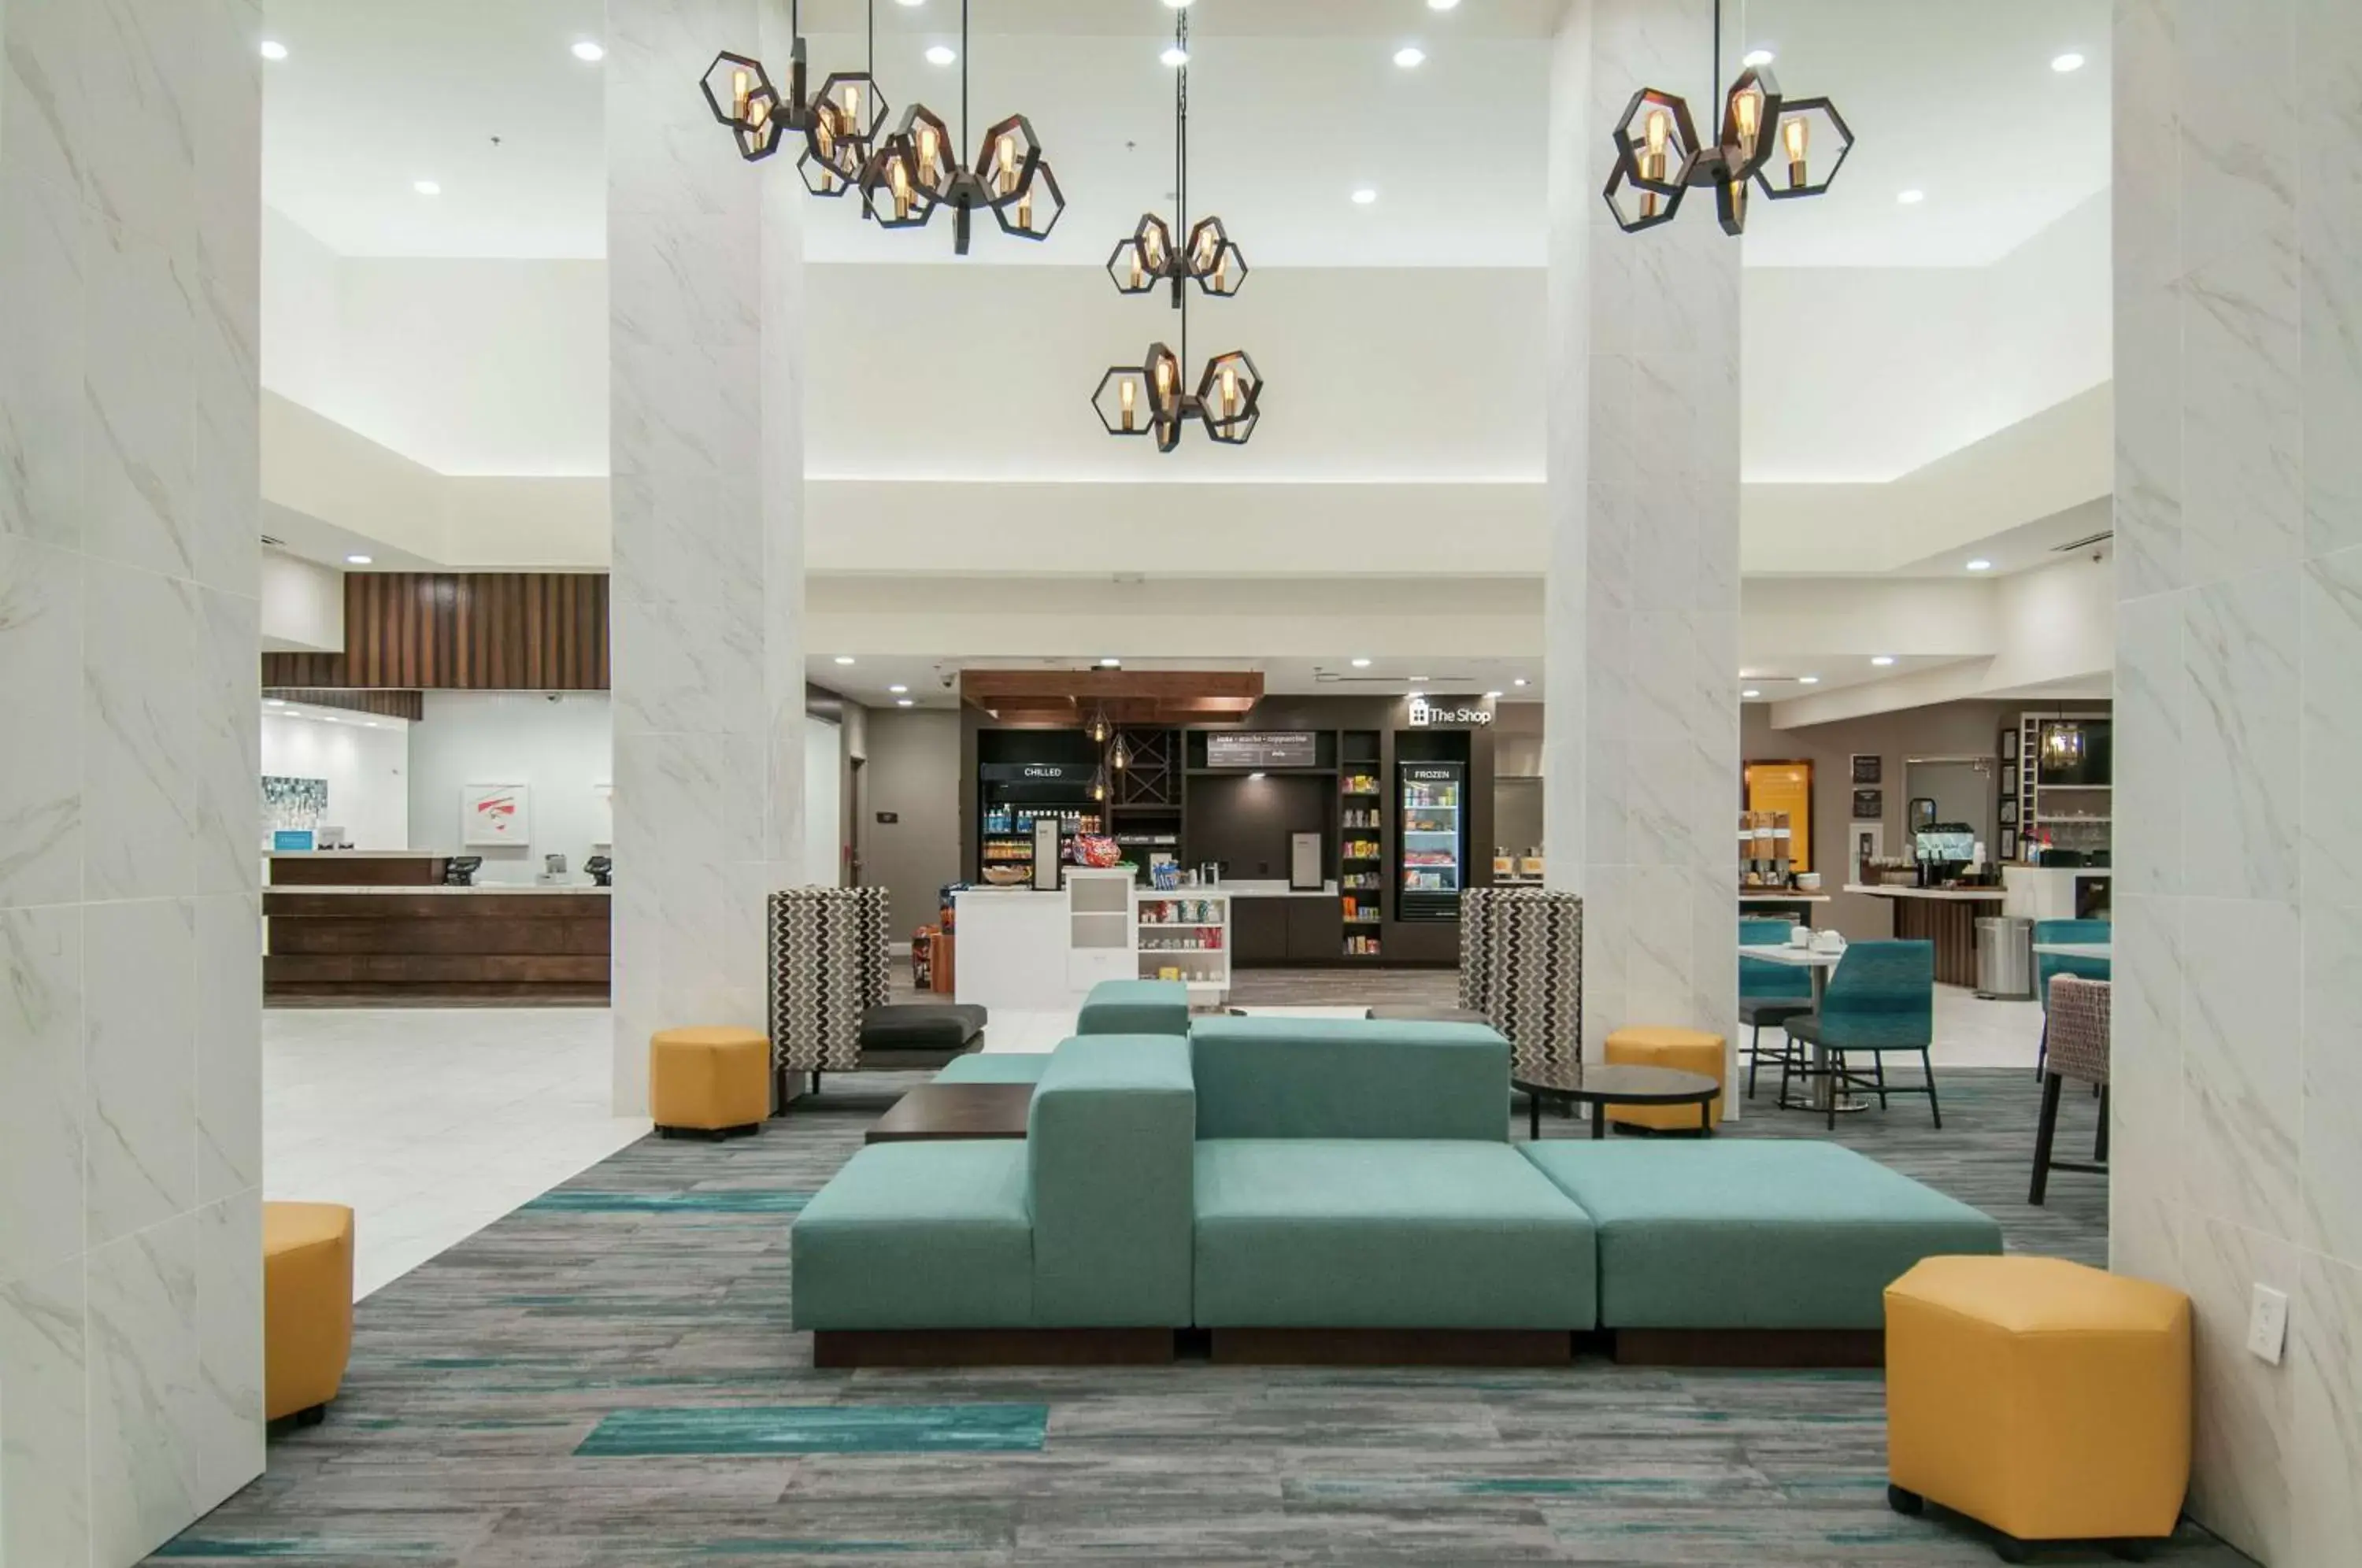 Lobby or reception, Lobby/Reception in Hilton Garden Inn Jackson/Clinton